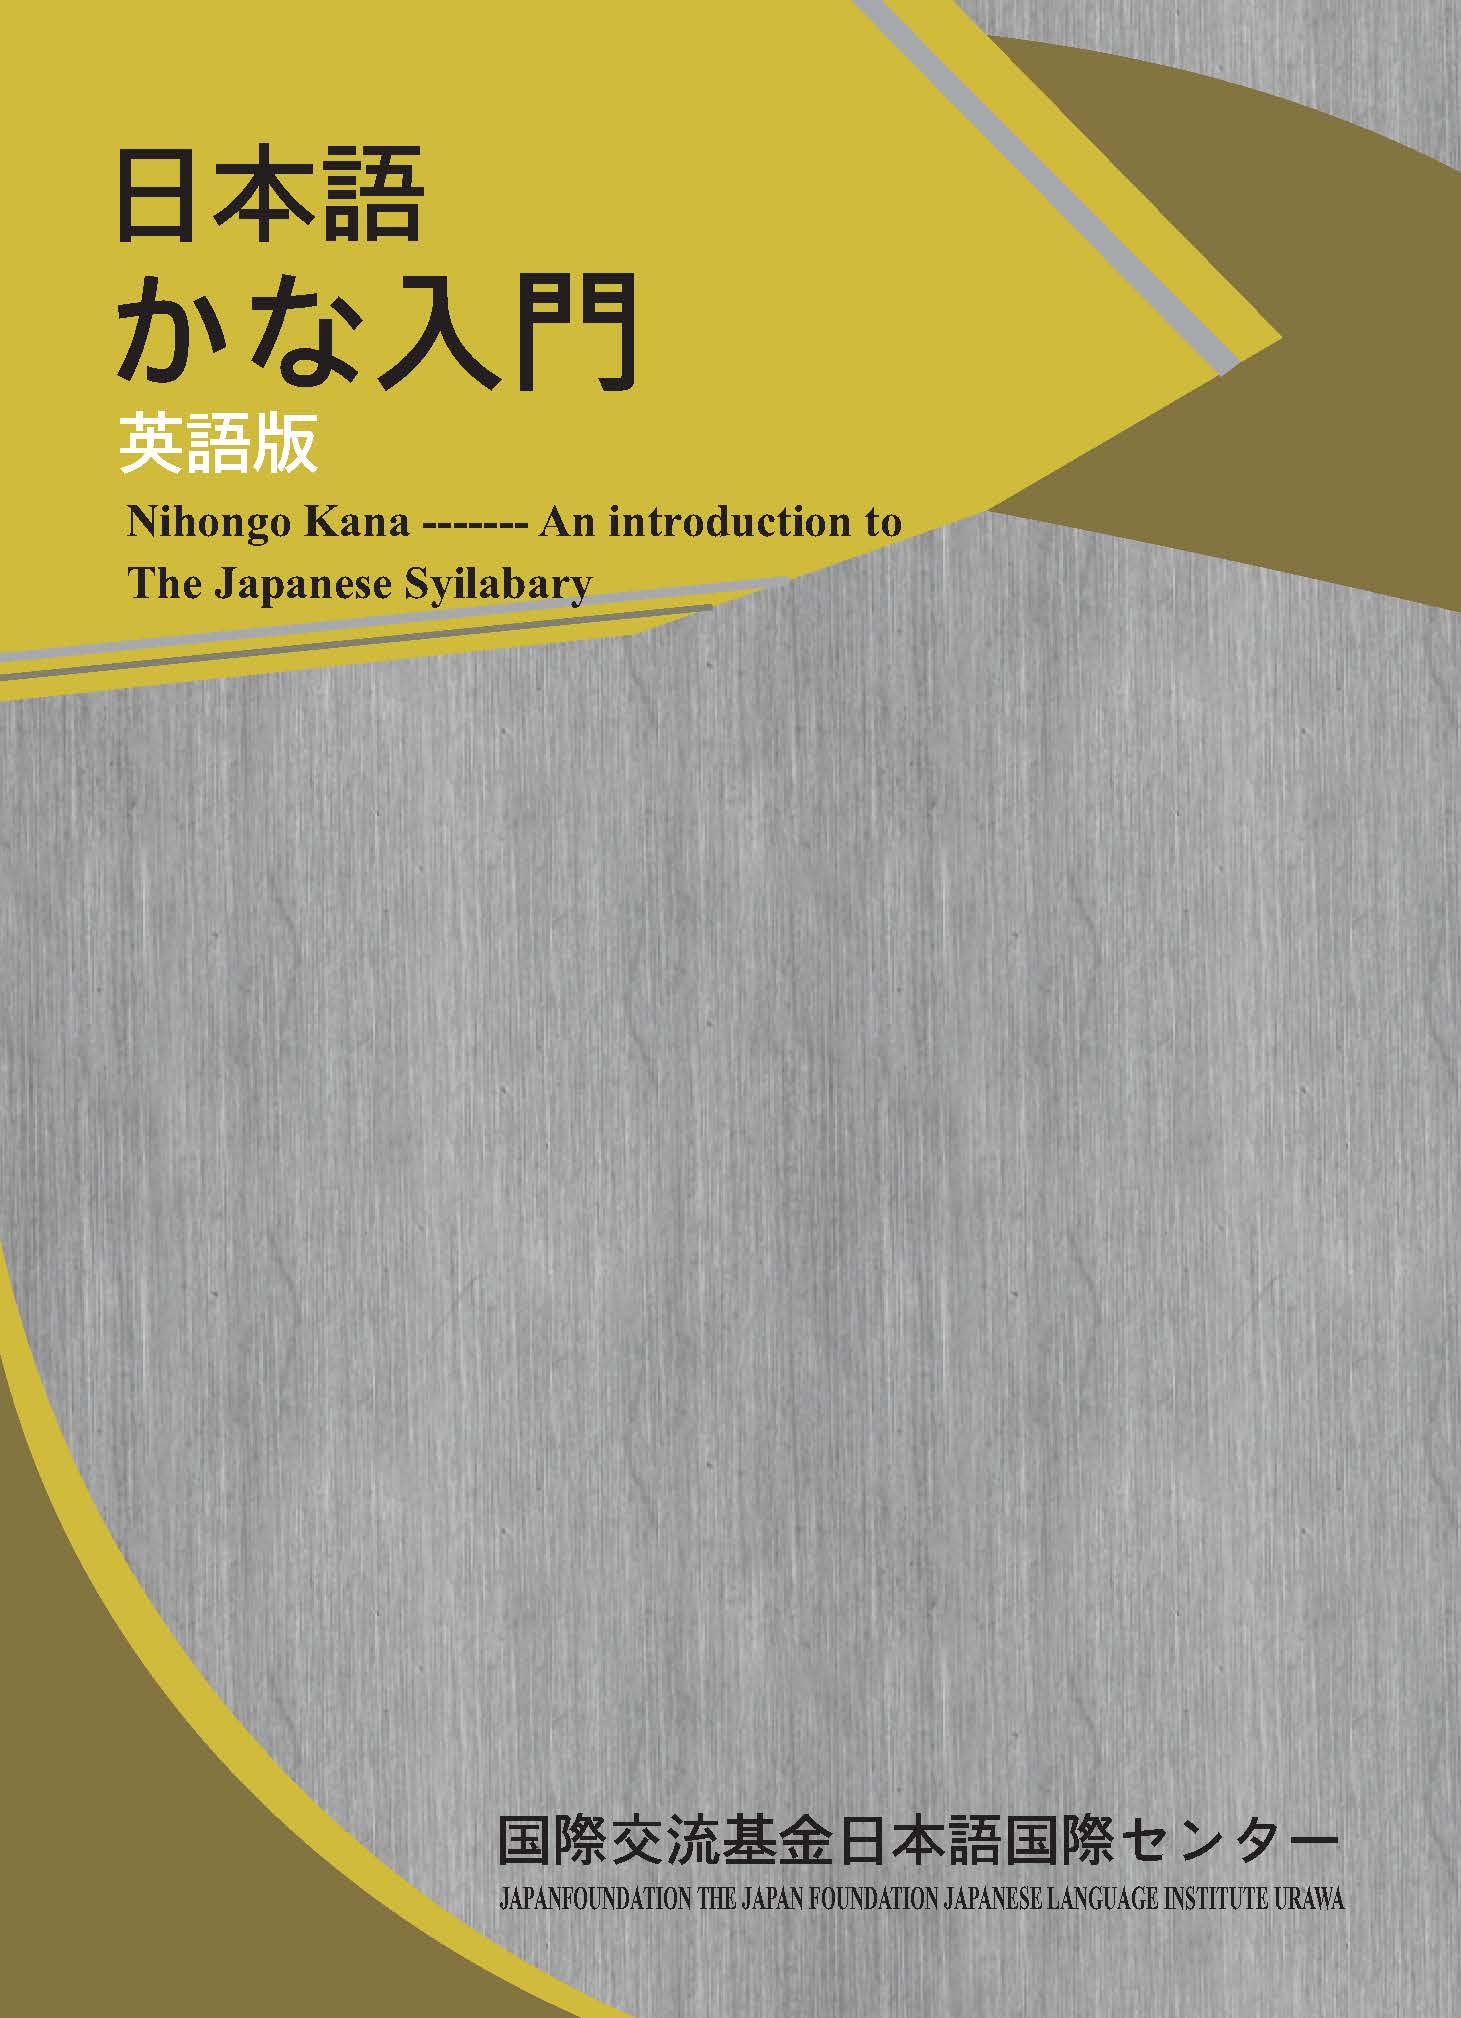 Lifestyle designKMK Sách Học Tiếng Nhật Kana Nyumon (Nhập Môn Tiếng Nhật)